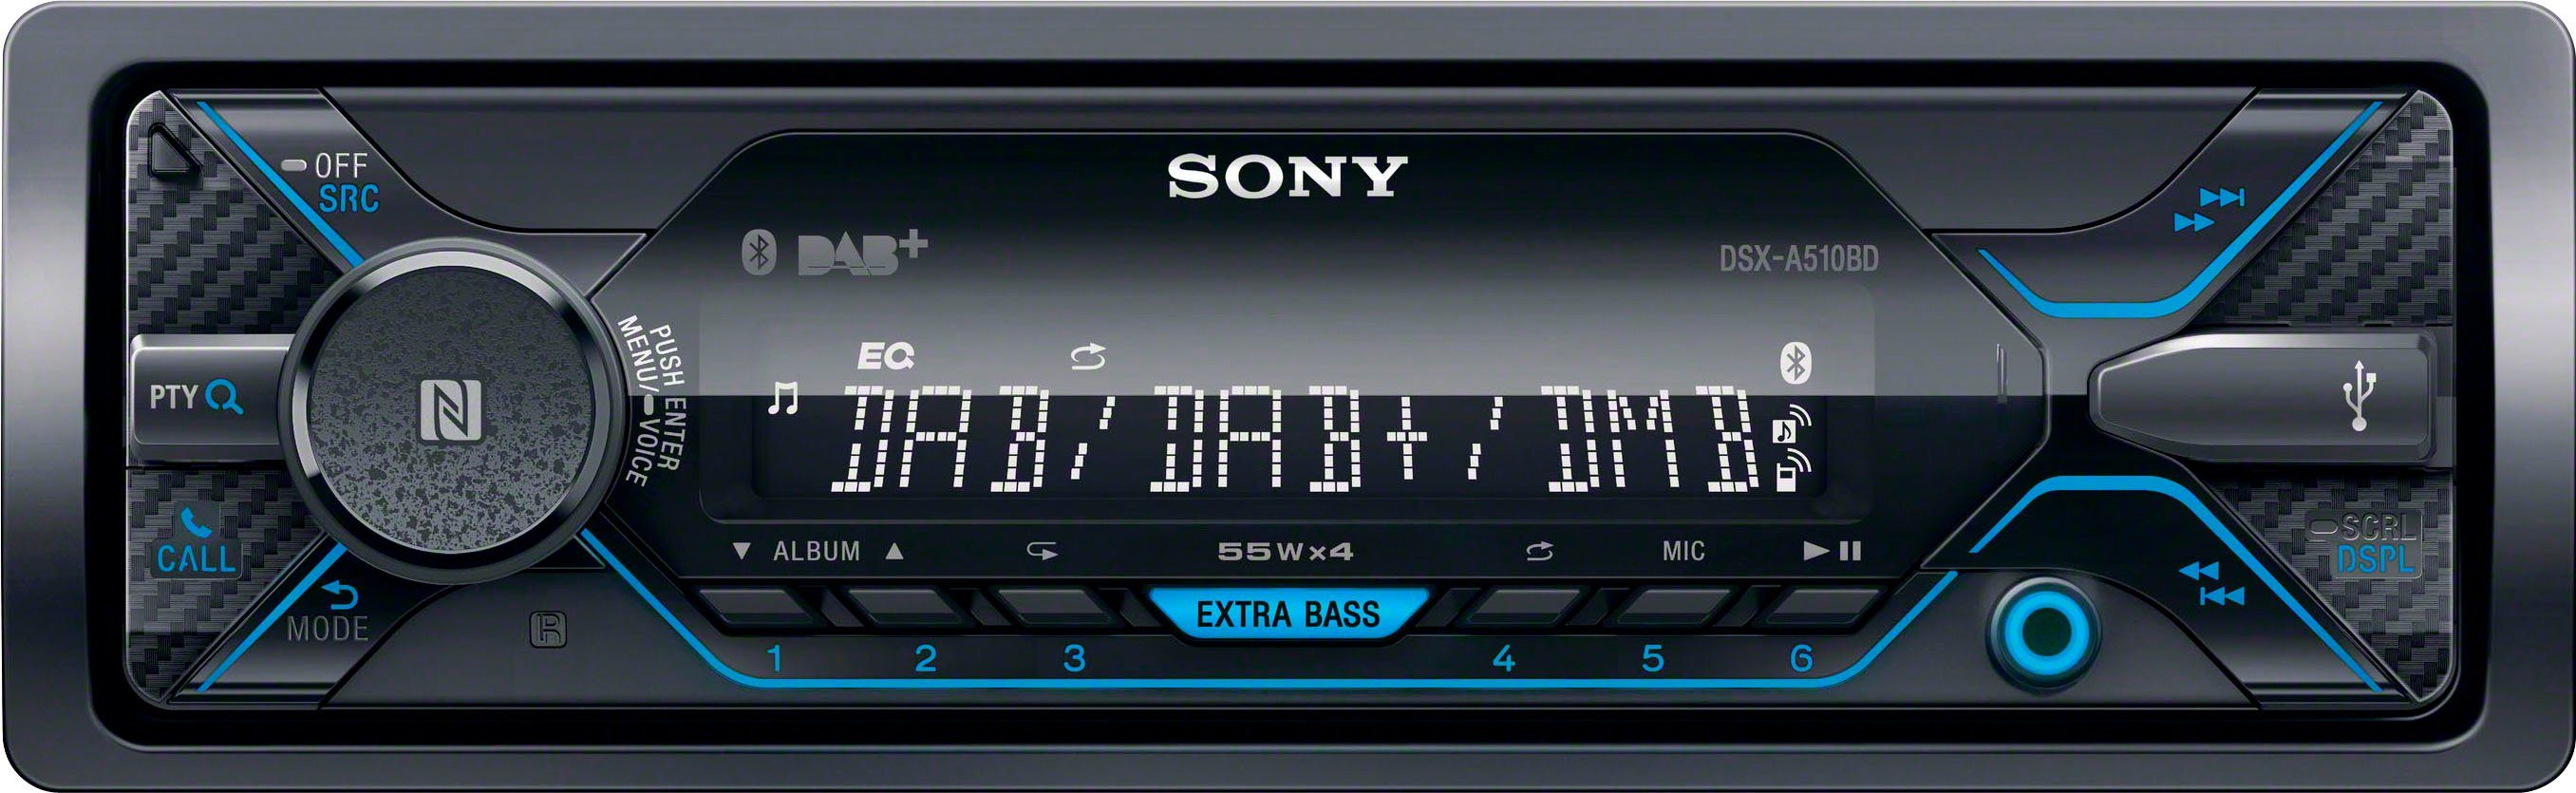 W) (DAB), FM-Tuner, DSX-A510KIT Autoradio 220 Digitalradio (AM-Tuner, Sony